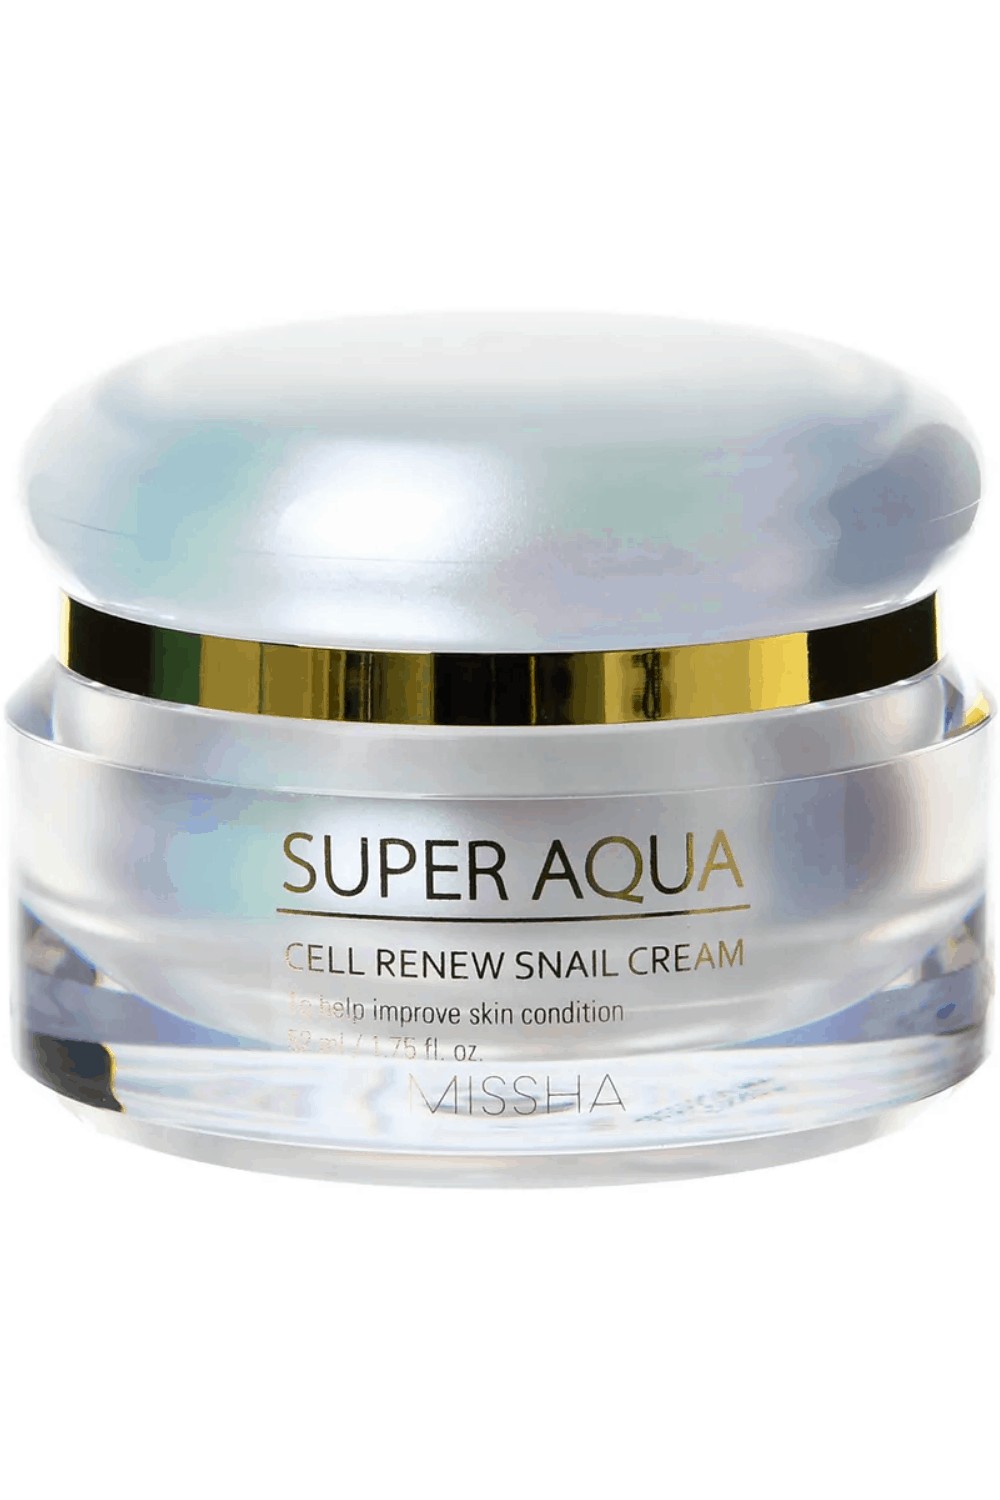 MISSHA – Super Aqua Cell Renew Snail Cream